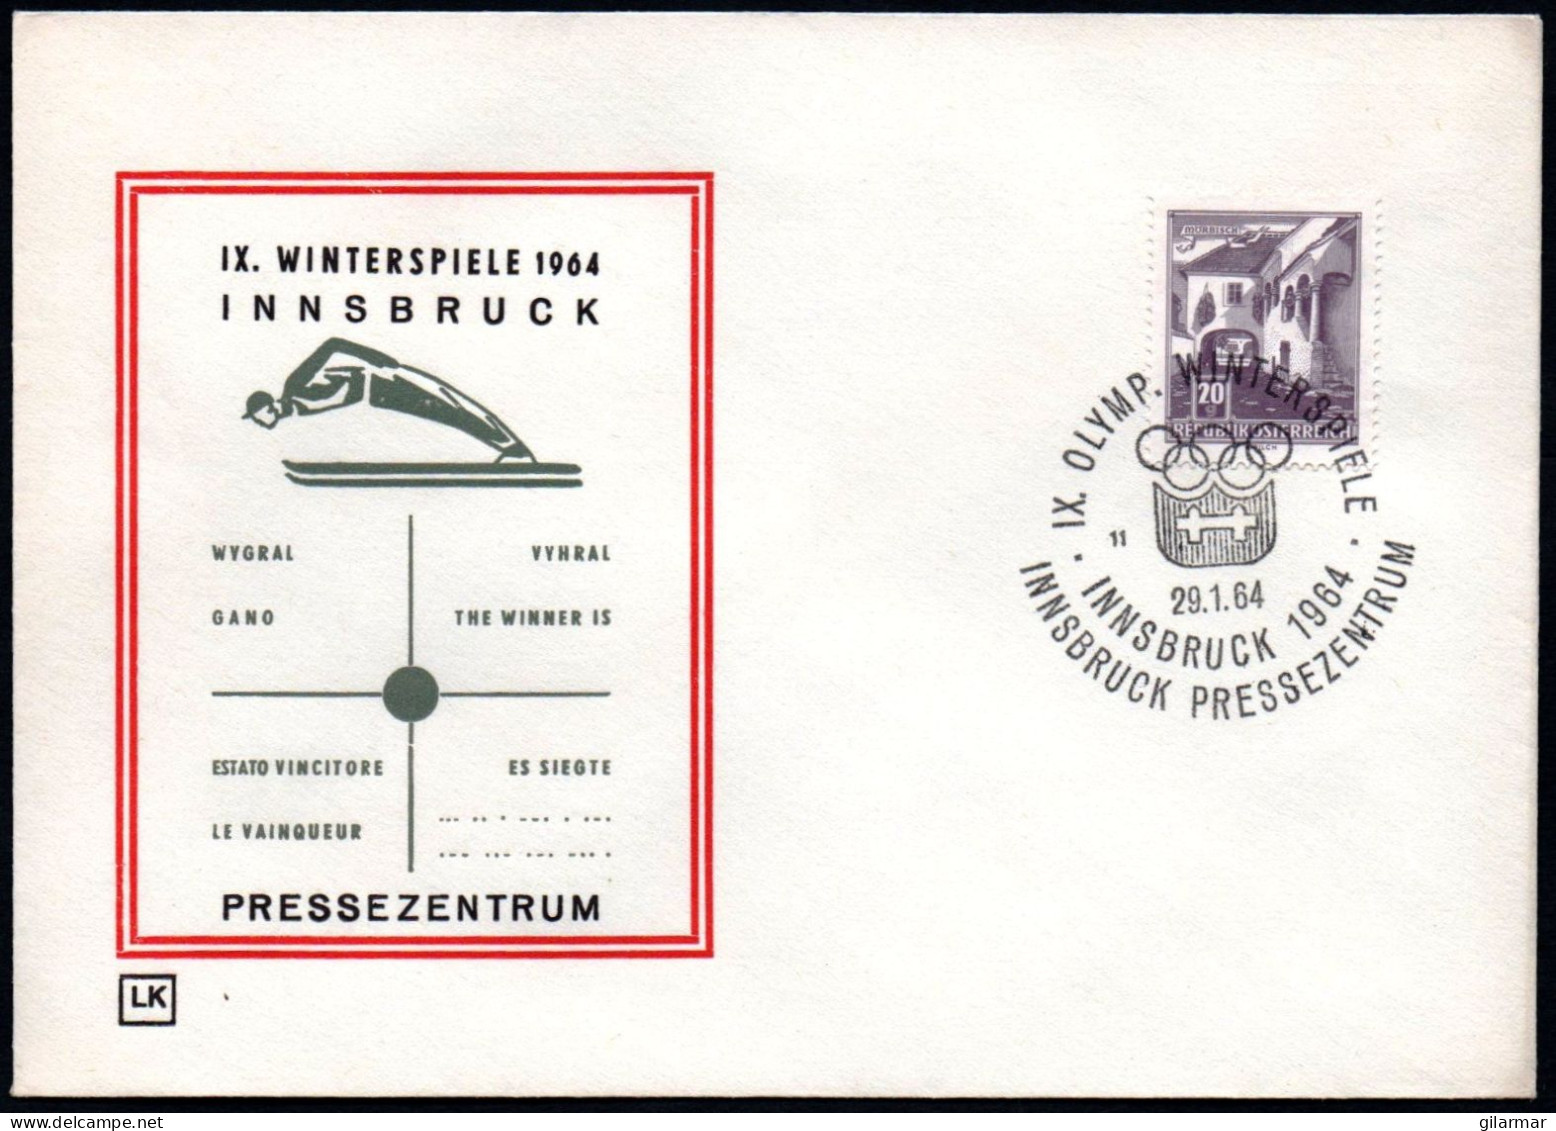 AUSTRIA INNSBRUCK 1964 - IX OLYMPIC WINTER GAMES - INNSBRUCK '64 - PRESS CENTRE - CANCEL # 11 - G - Hiver 1964: Innsbruck